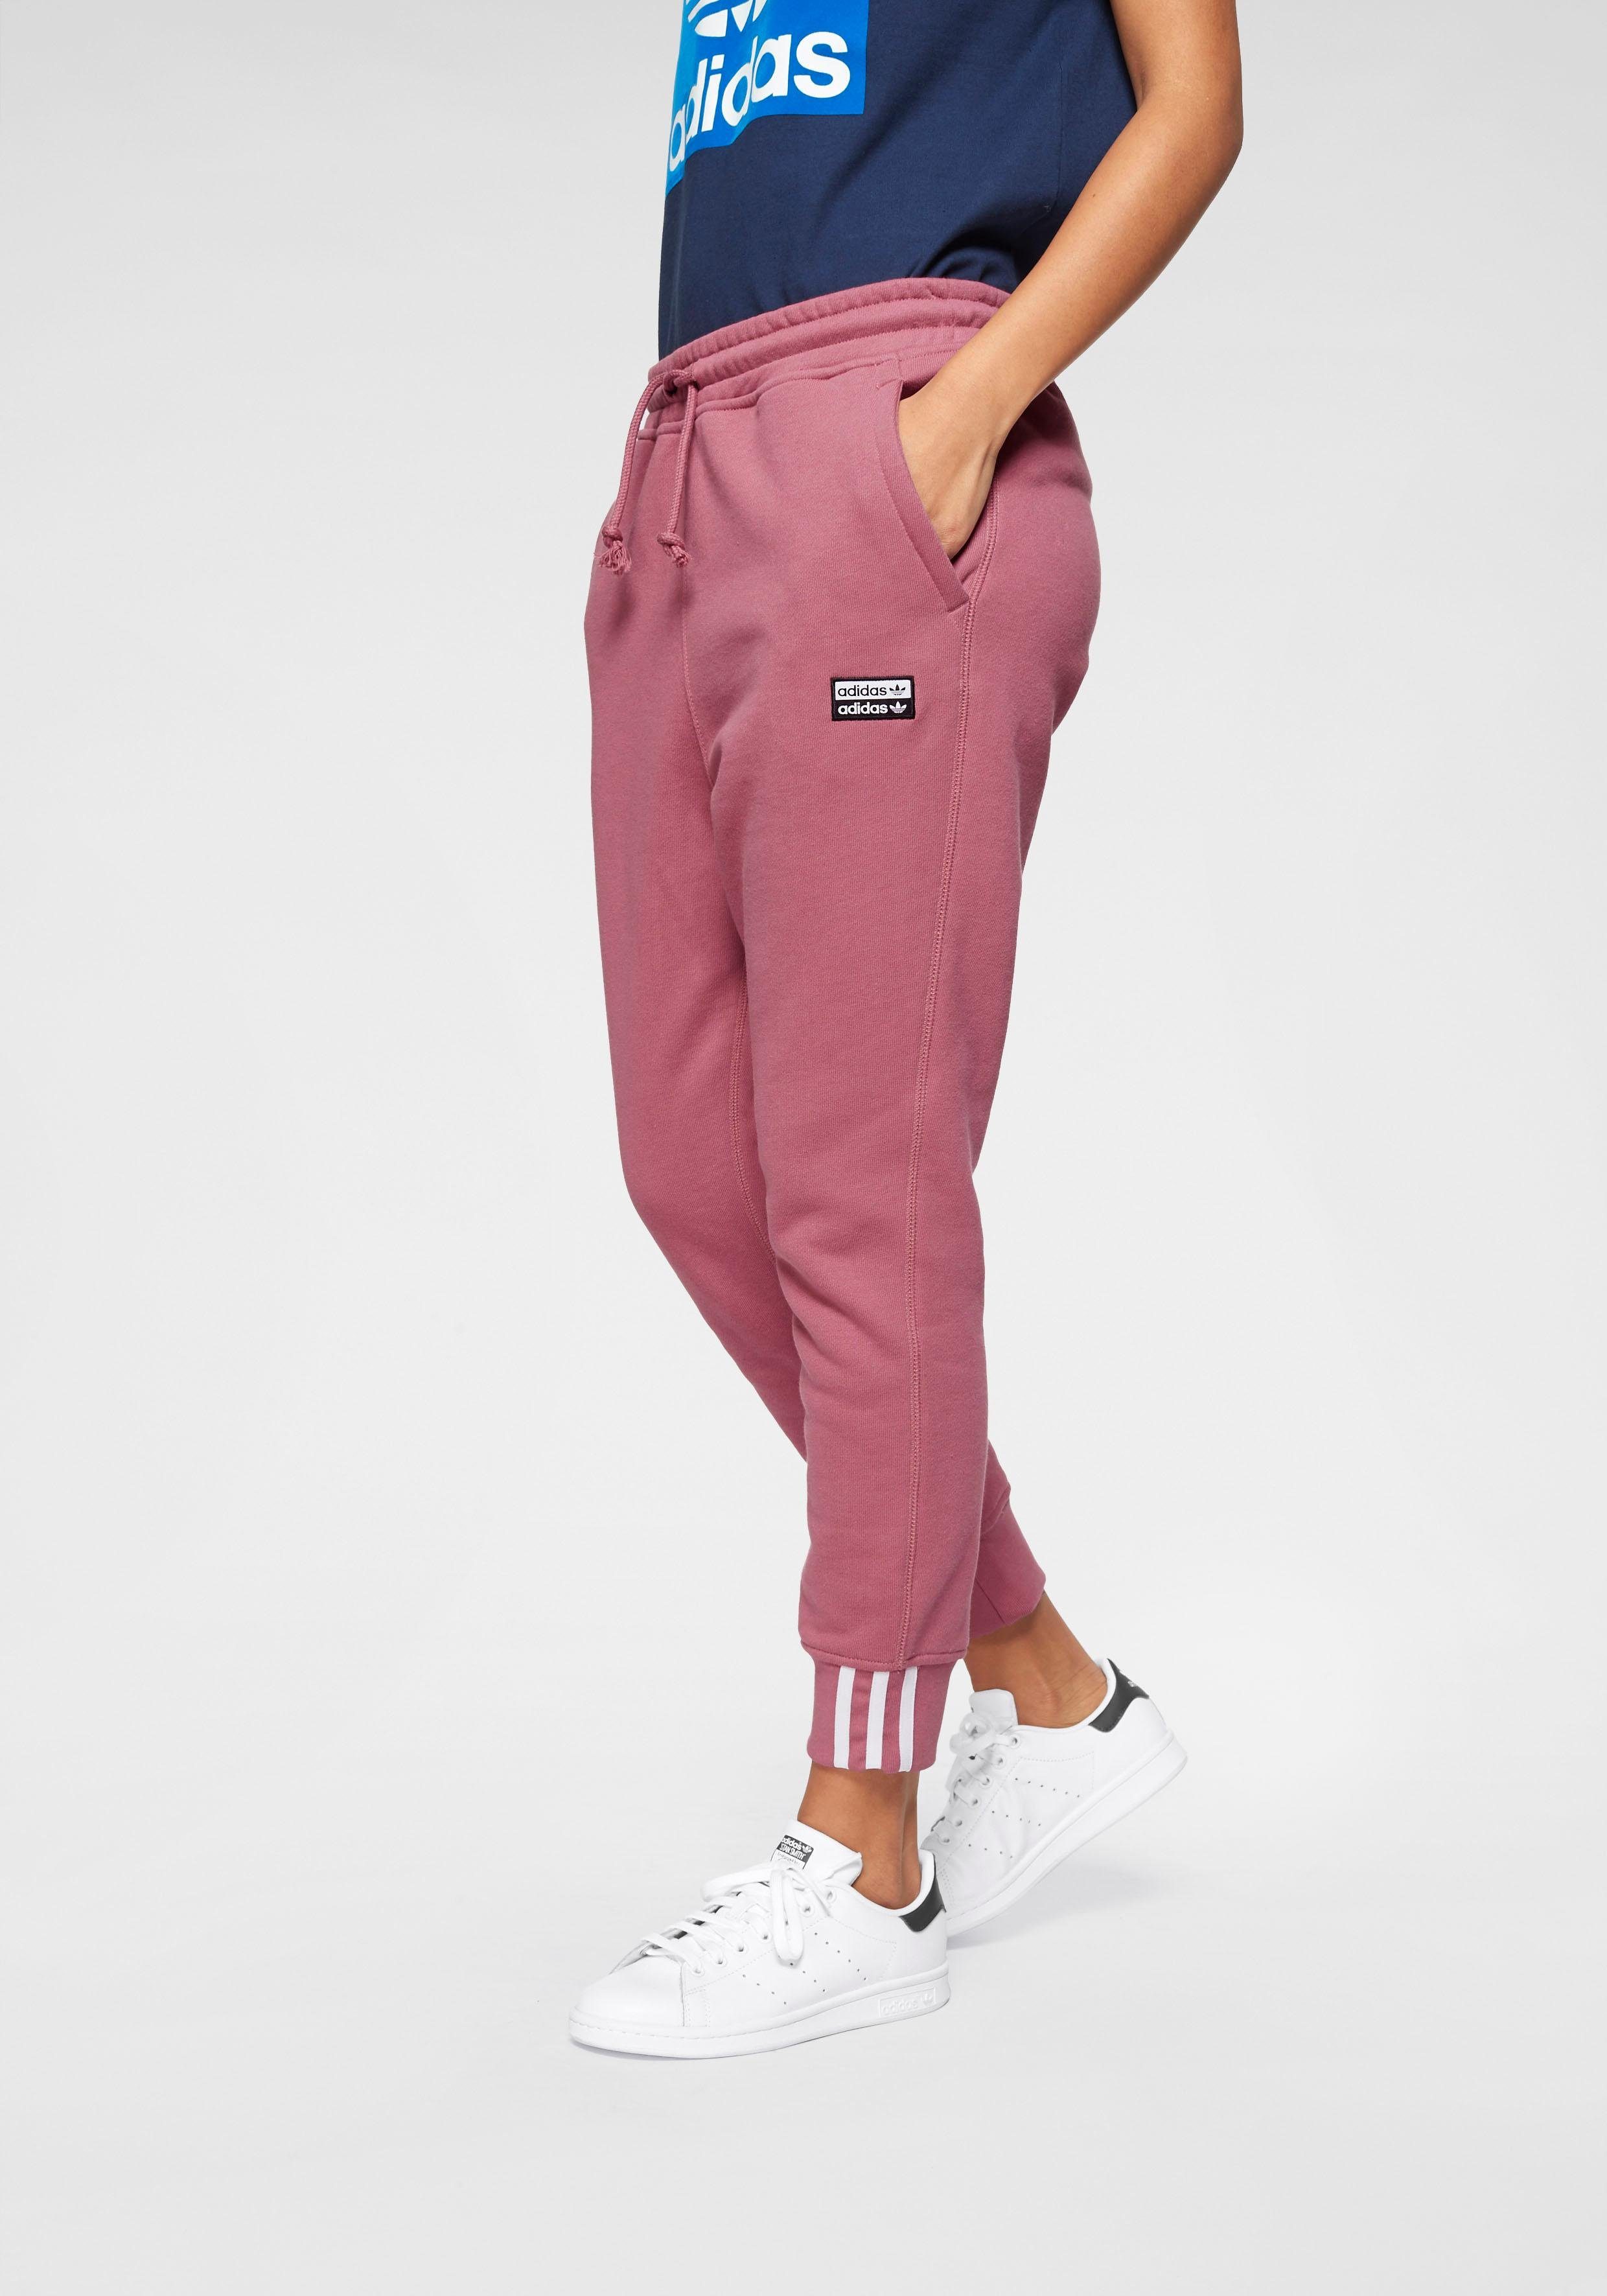 adidas Originals Jogginghose »VOCAL PANT« kaufen | OTTO